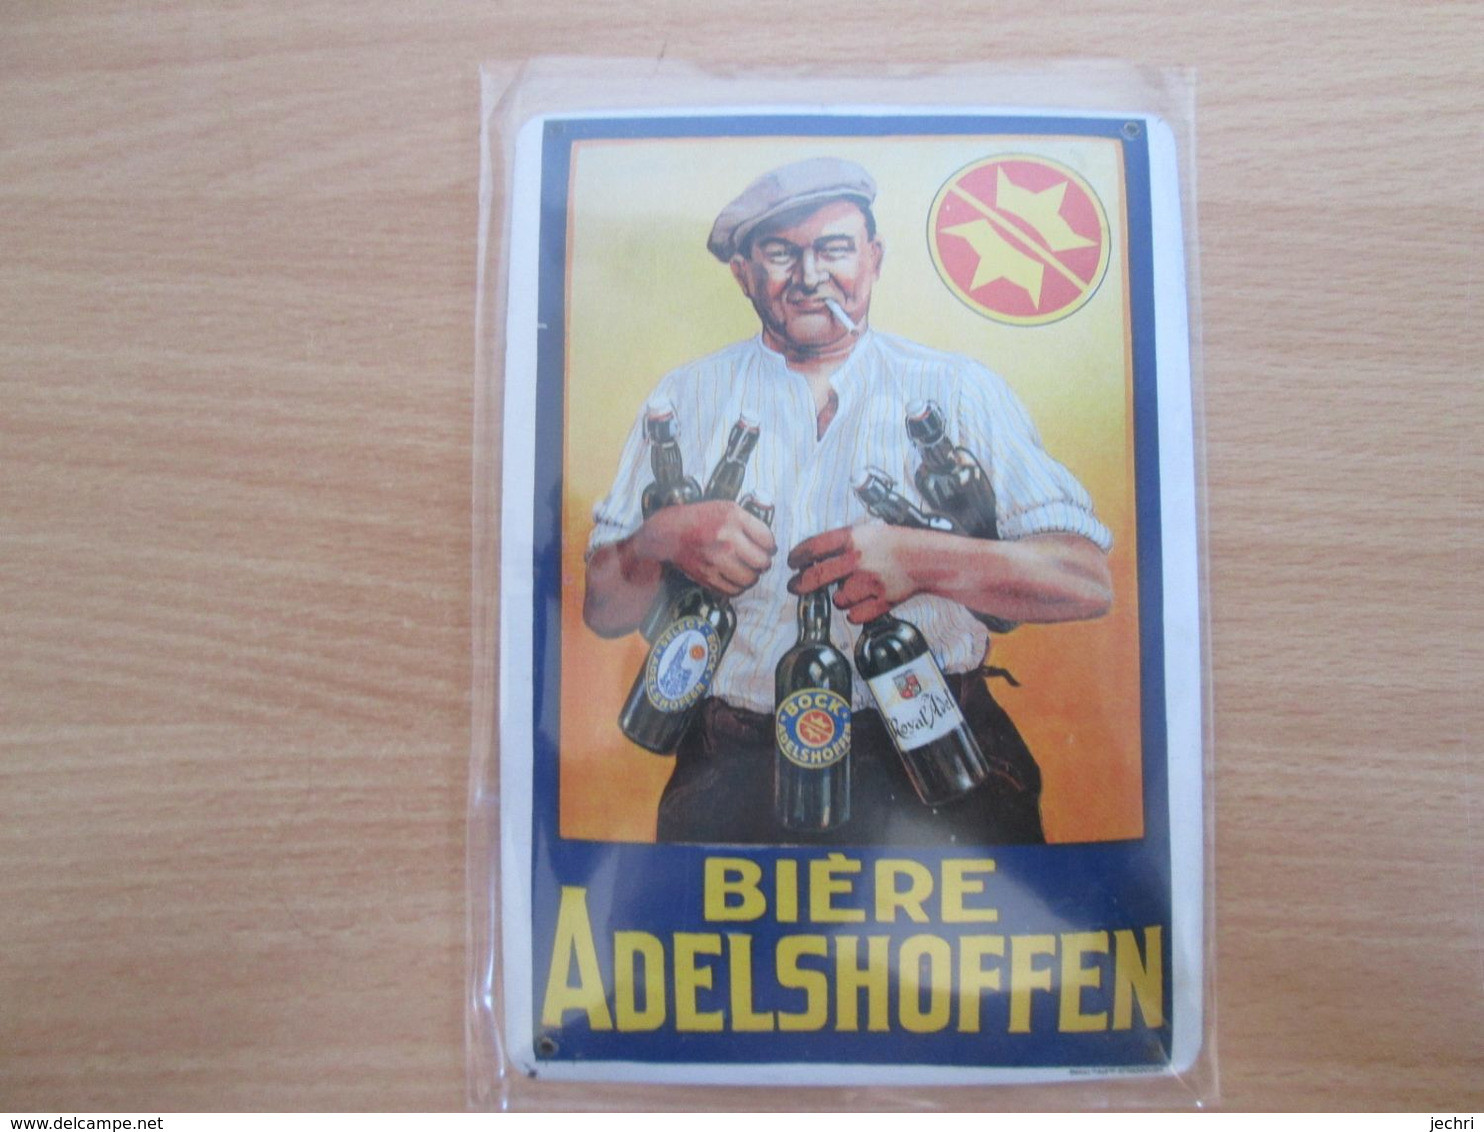 Petite Tole Publicitaire Biere Adelshoffen  . Format Carte Postale - Schilder